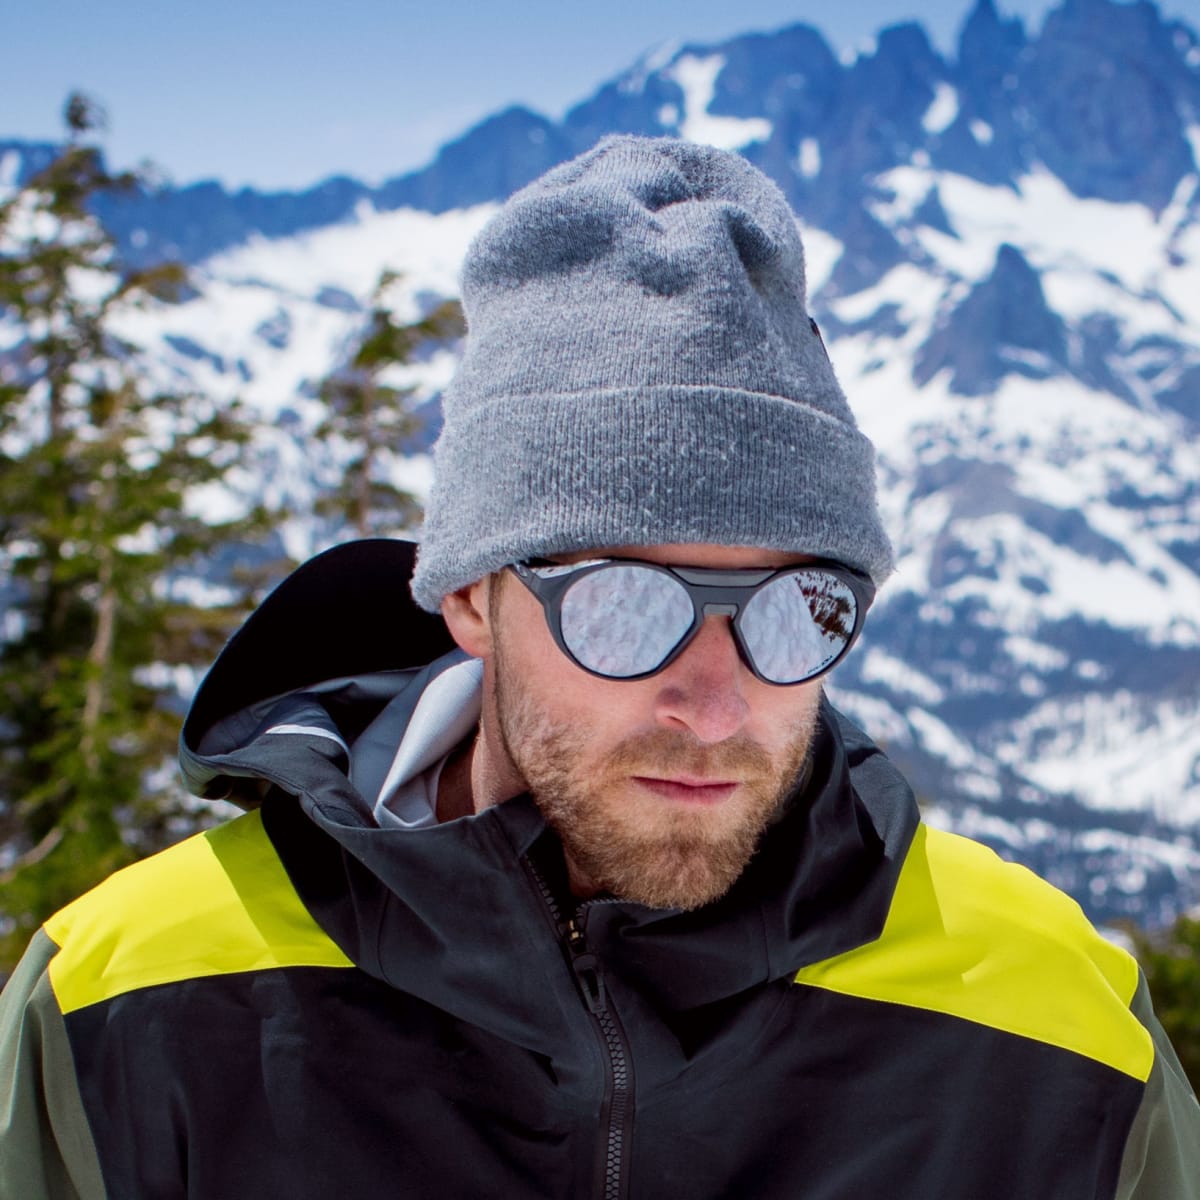 oakley mountaineering glasses